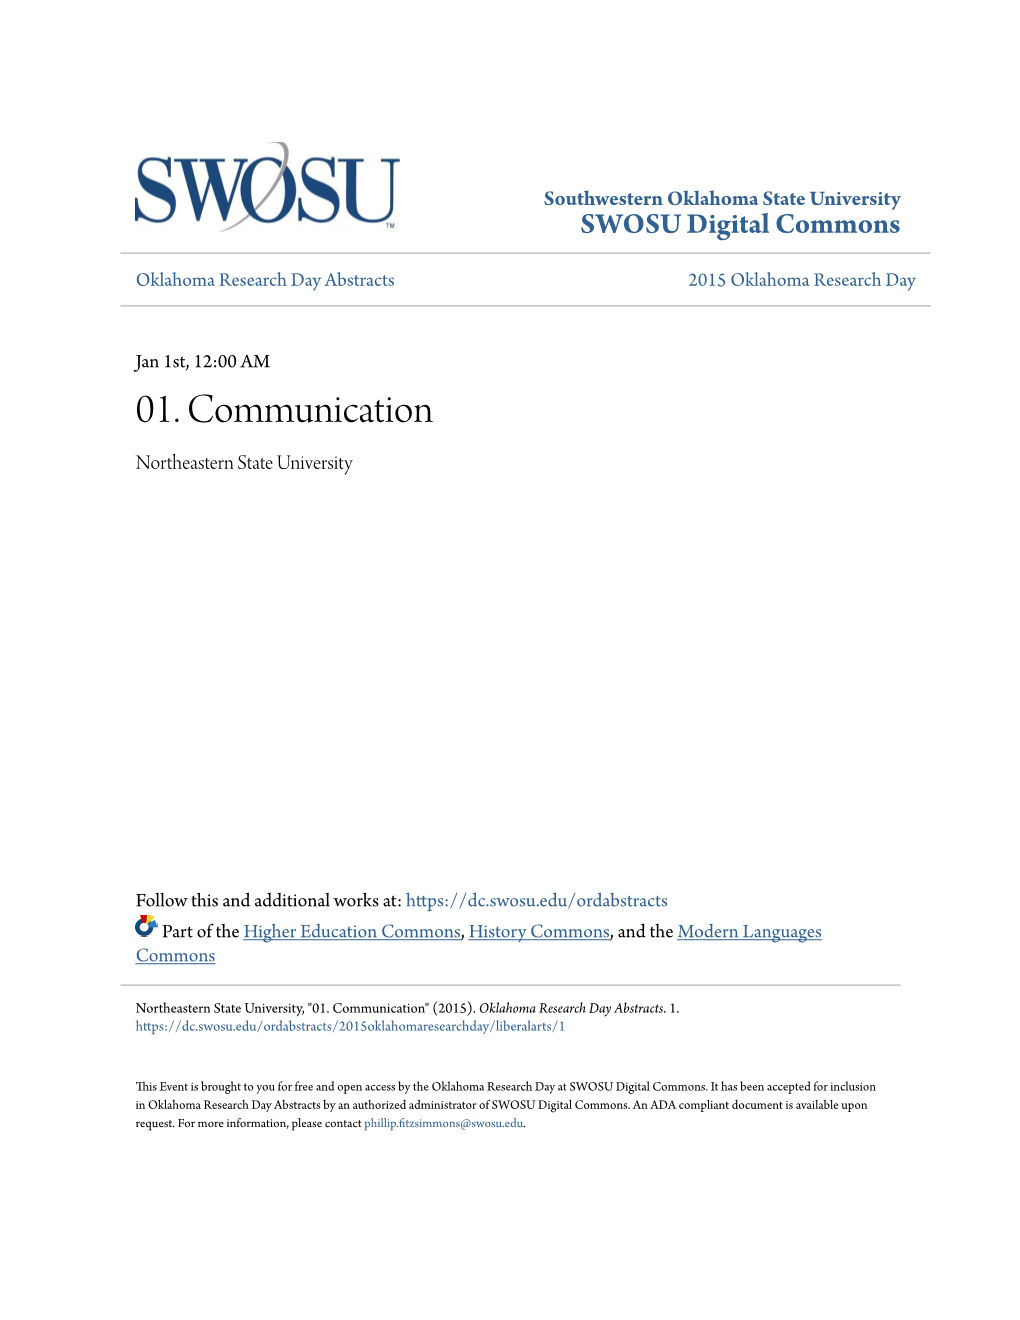 01. Communication Northeastern State University